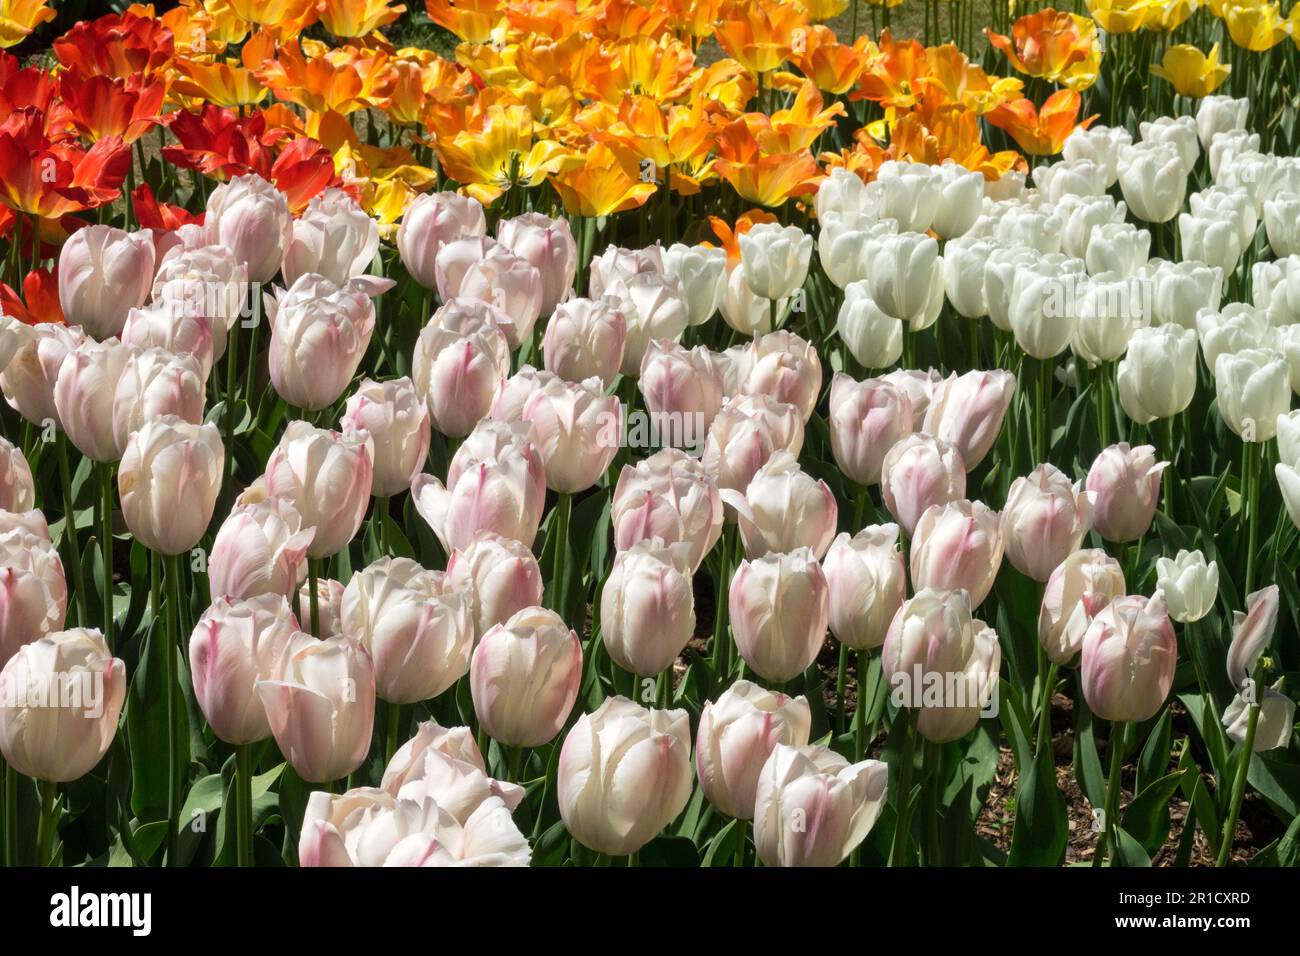 Ampia gamma di colori, Display, letto di fiori, Tulipani, misto, Primavera, Stagione, Giardino, Tulipa bianca 'Hakuun', Tulipa 'Van Eijk Salmon', Tulipa 'Pace Mondiale' Foto Stock